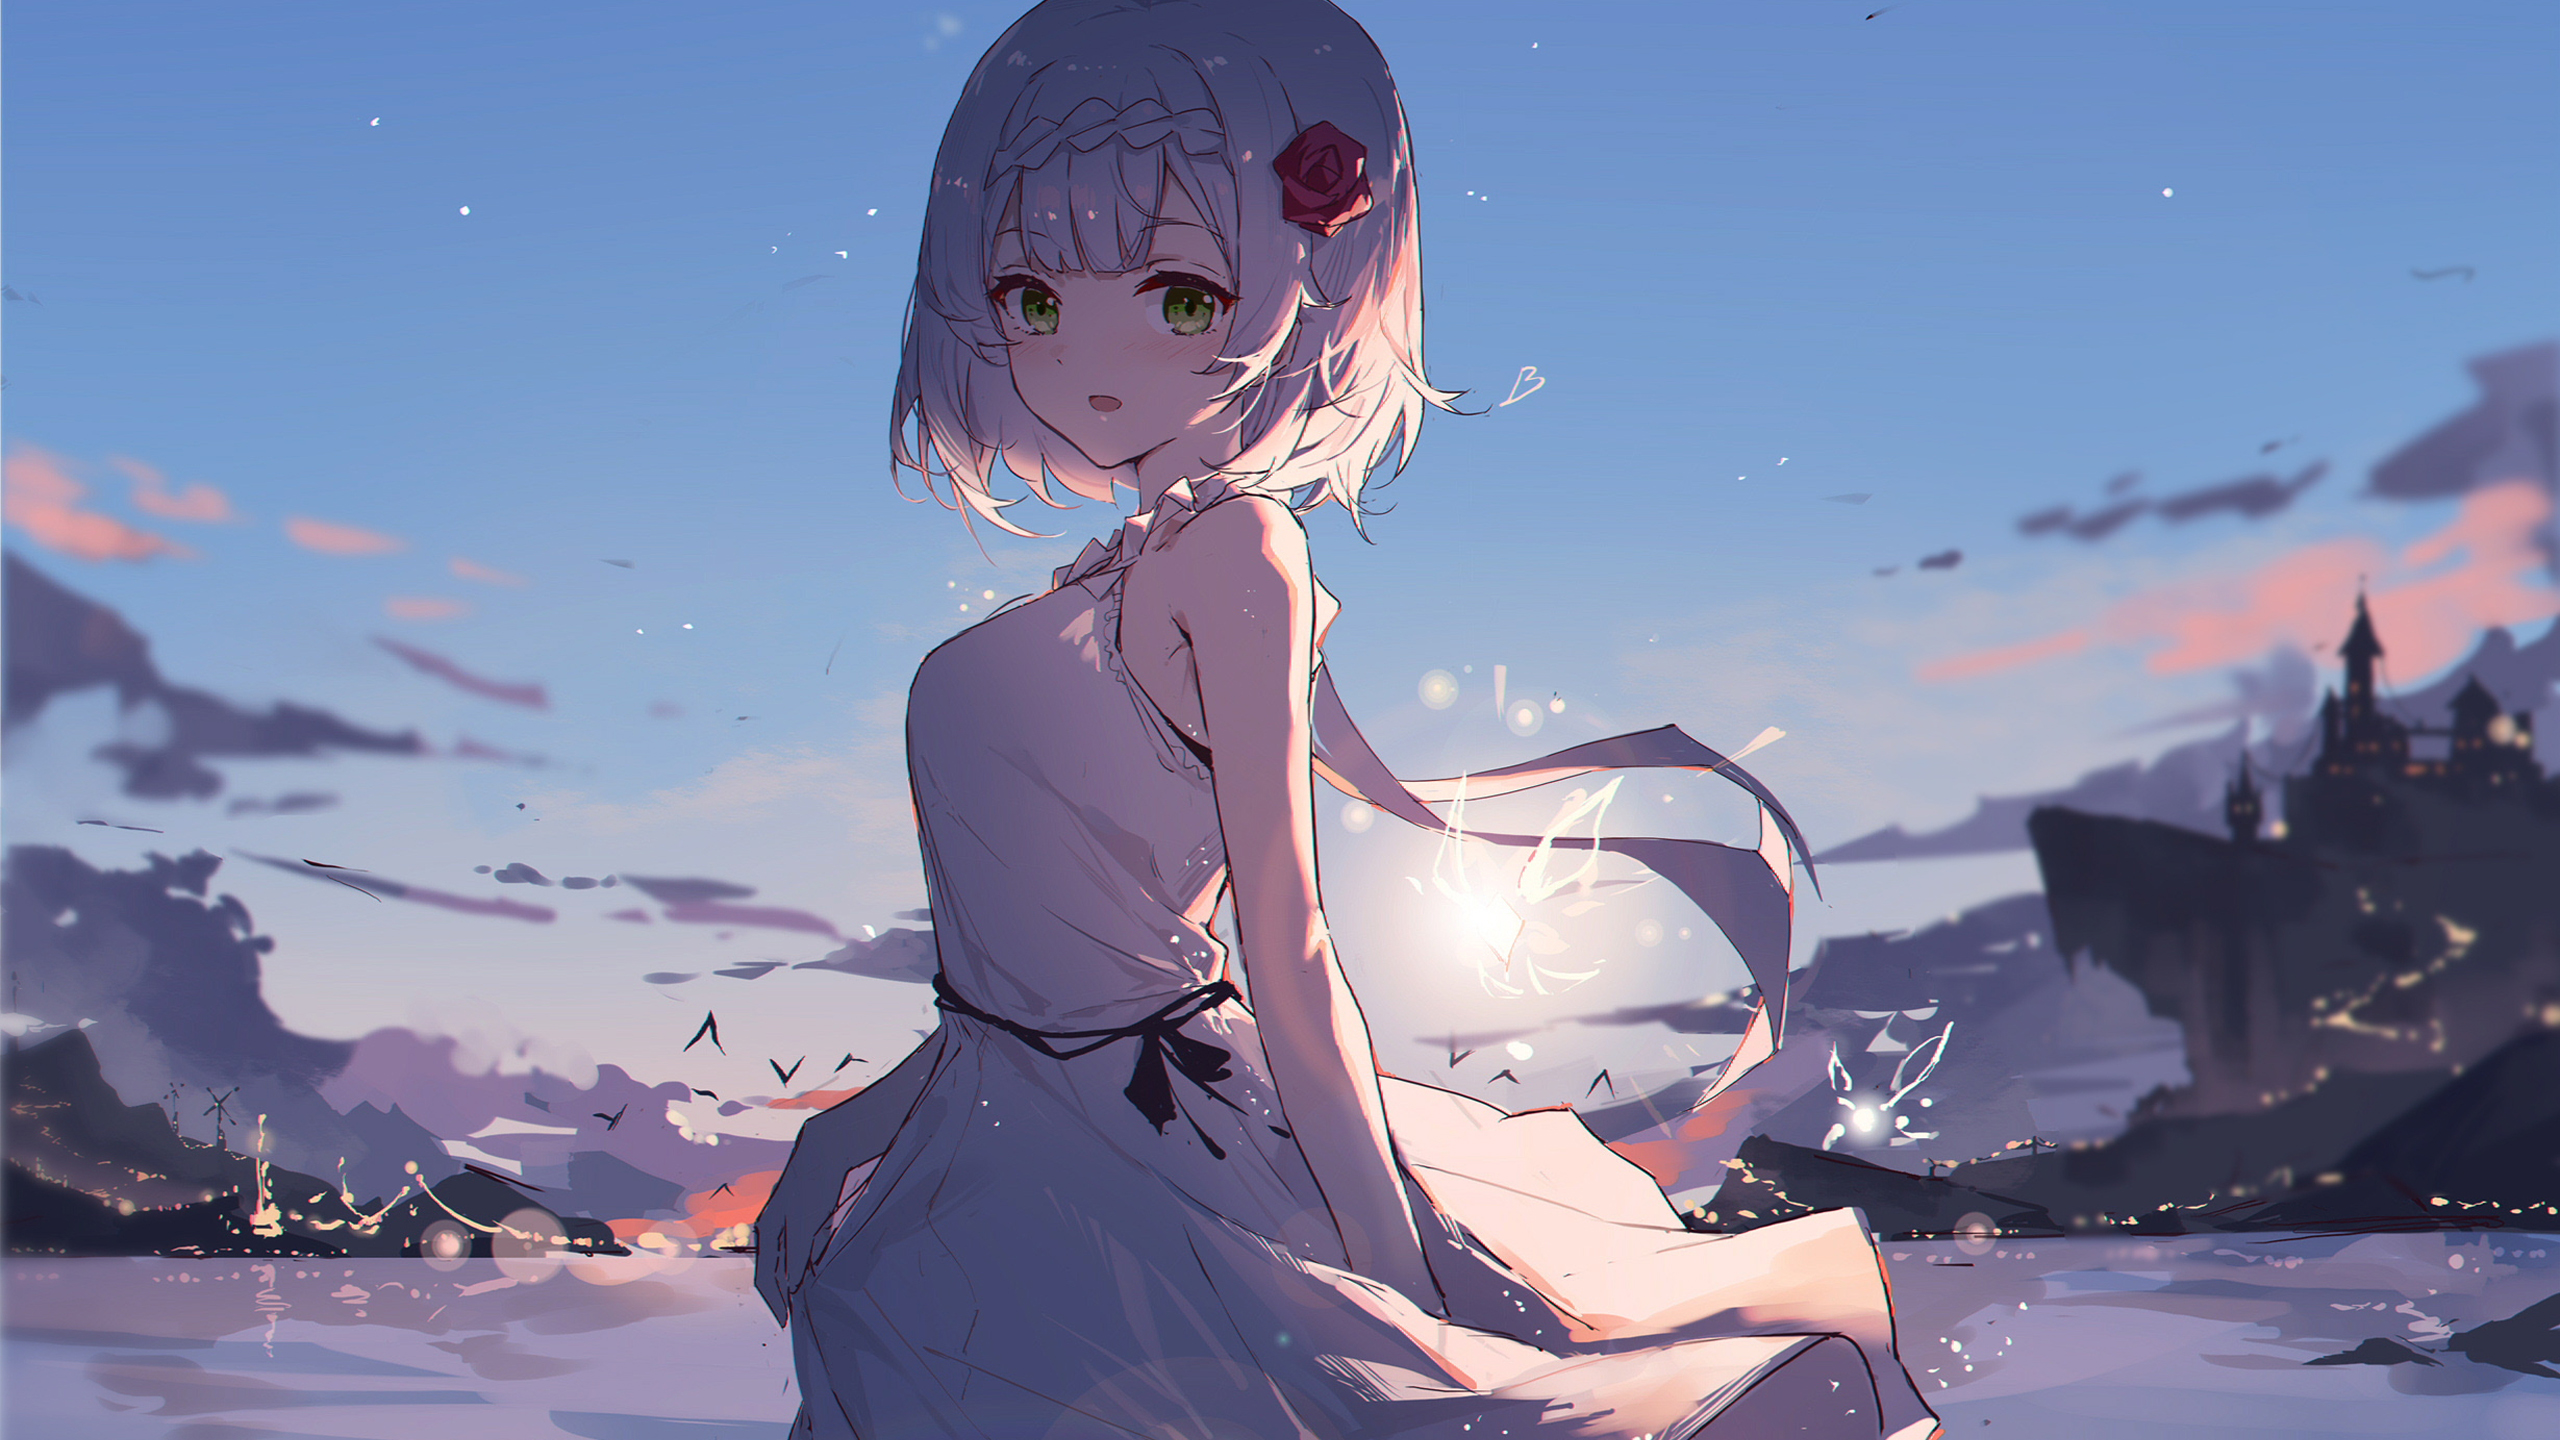 Short Hair Anime Girl With White Dress Standing In Blue Sky Wallpaper 2K Anime Girl